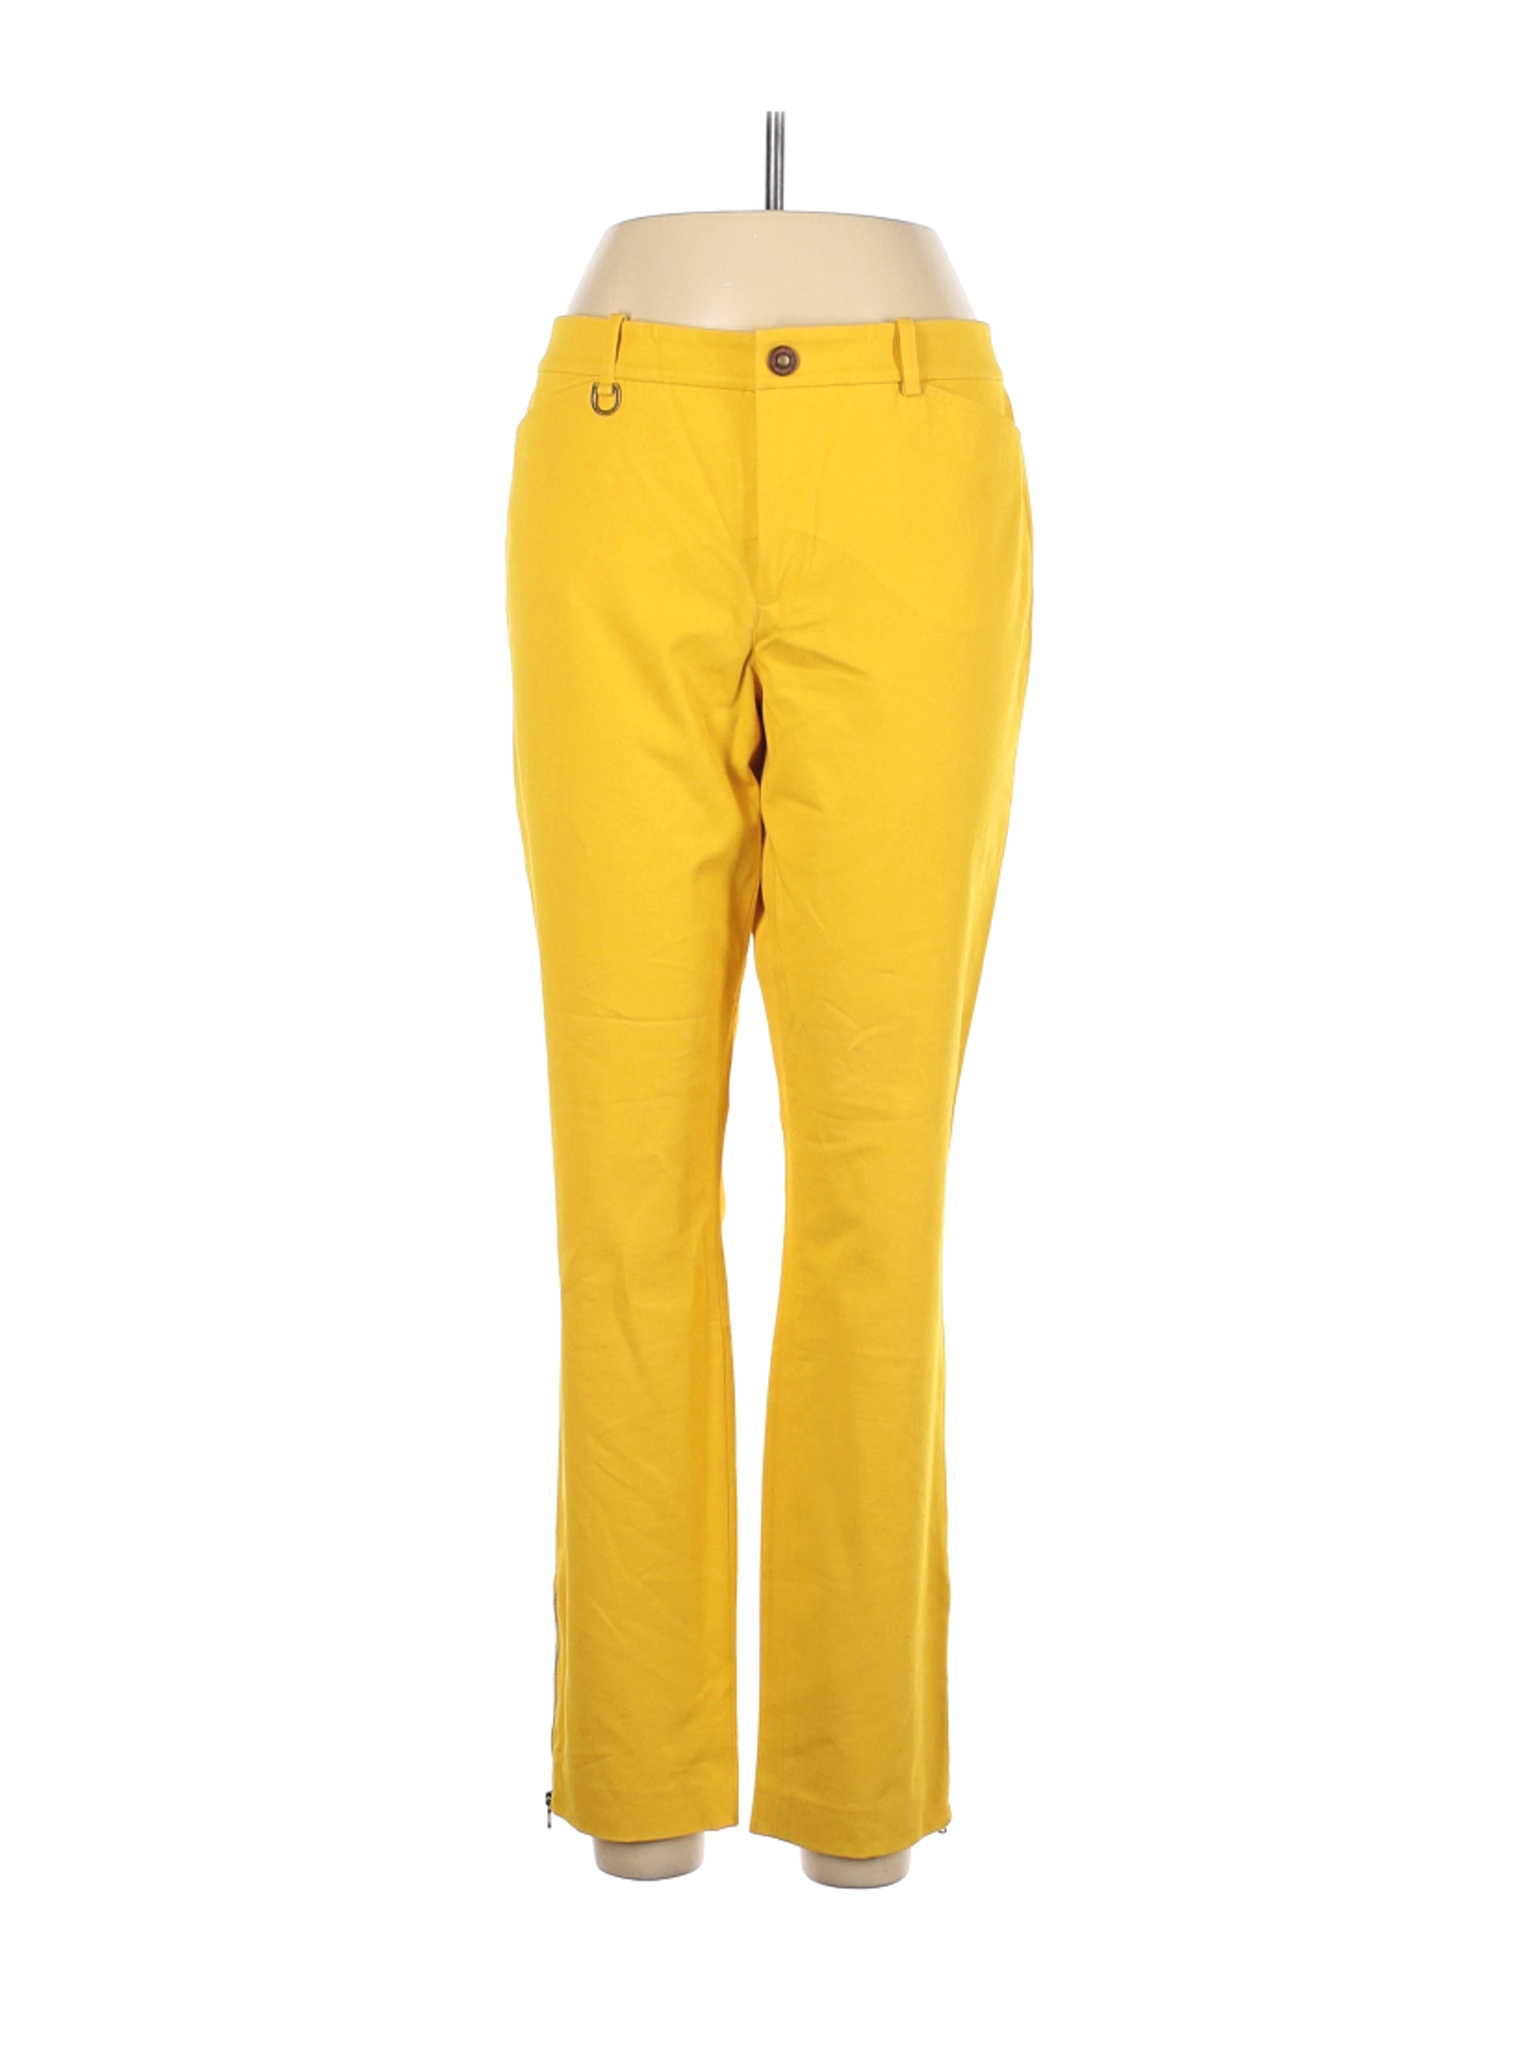 Lauren by Ralph Lauren Women Yellow Casual Pants 12 | eBay